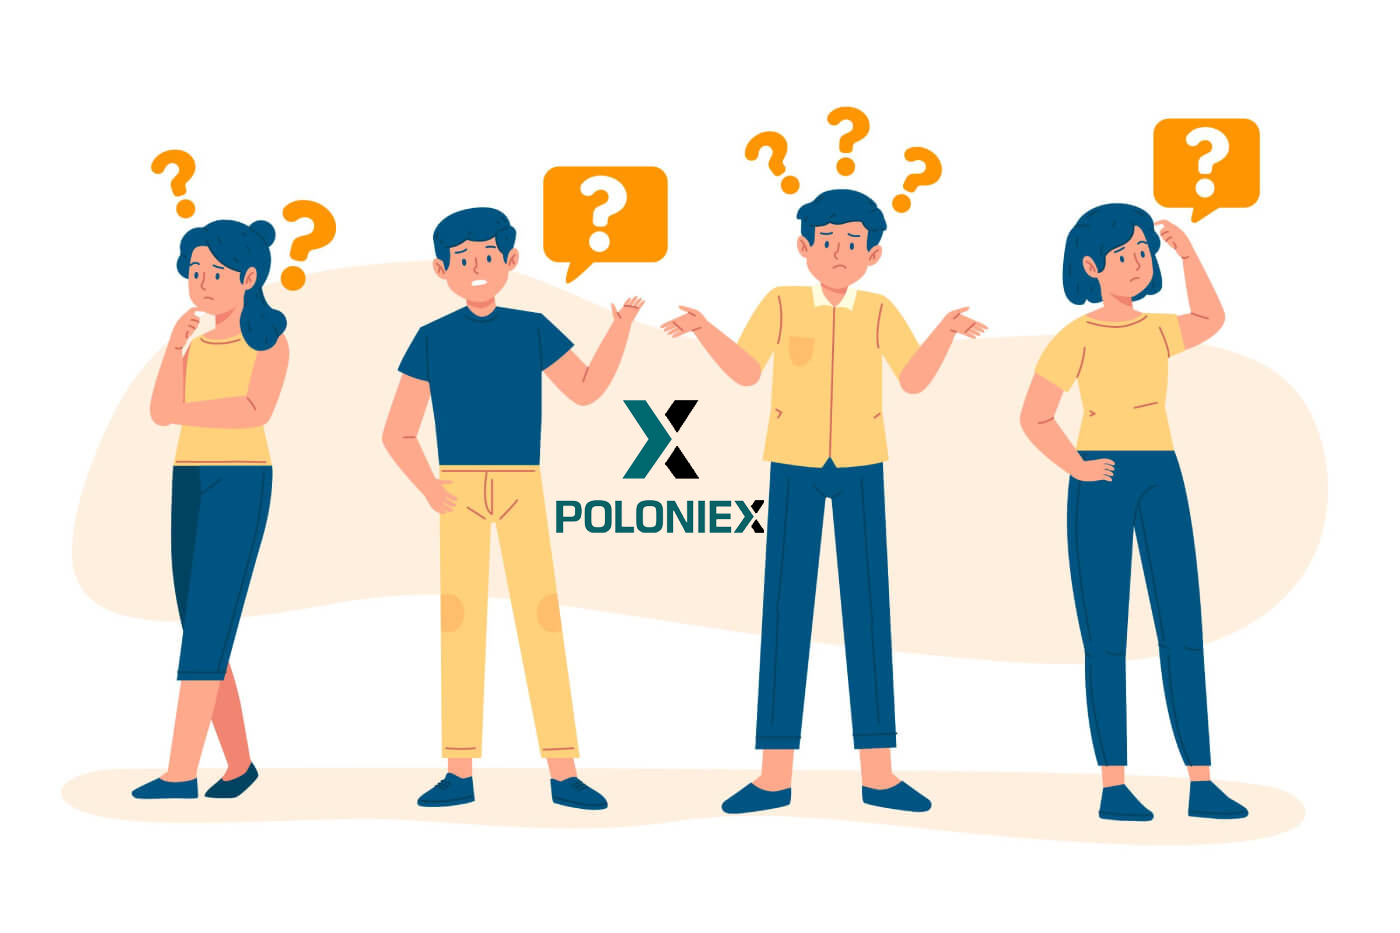 Pertanyaan yang Sering Diajukan (FAQ) di Poloniex